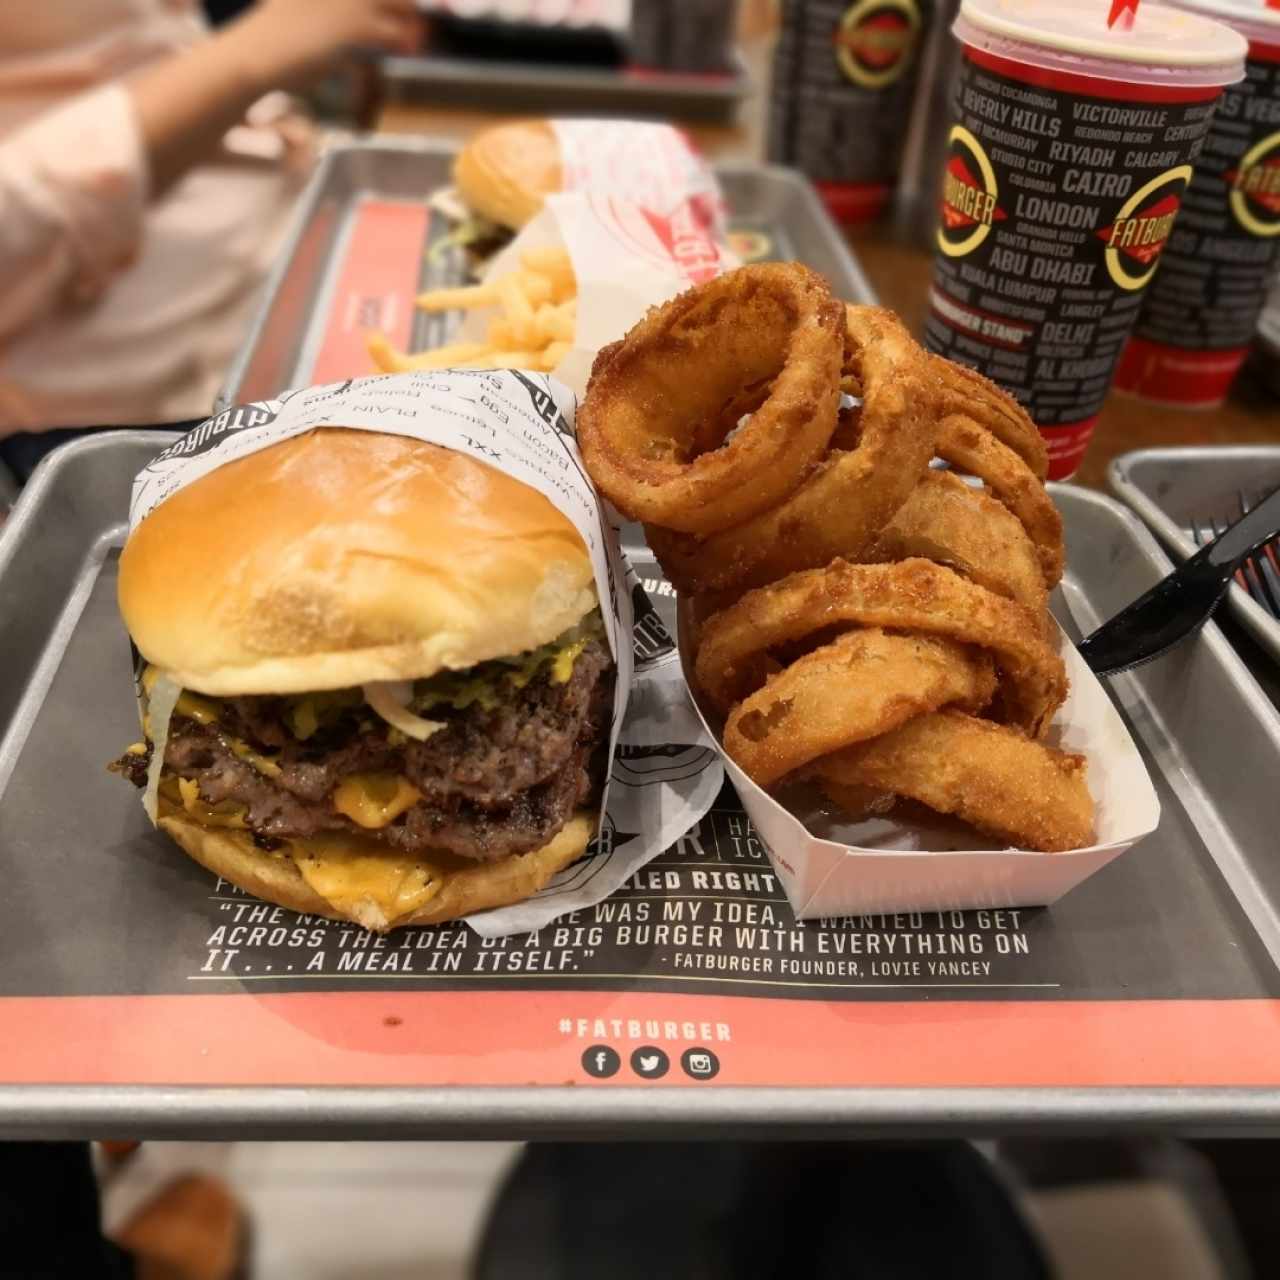 The Fatburger - Quad